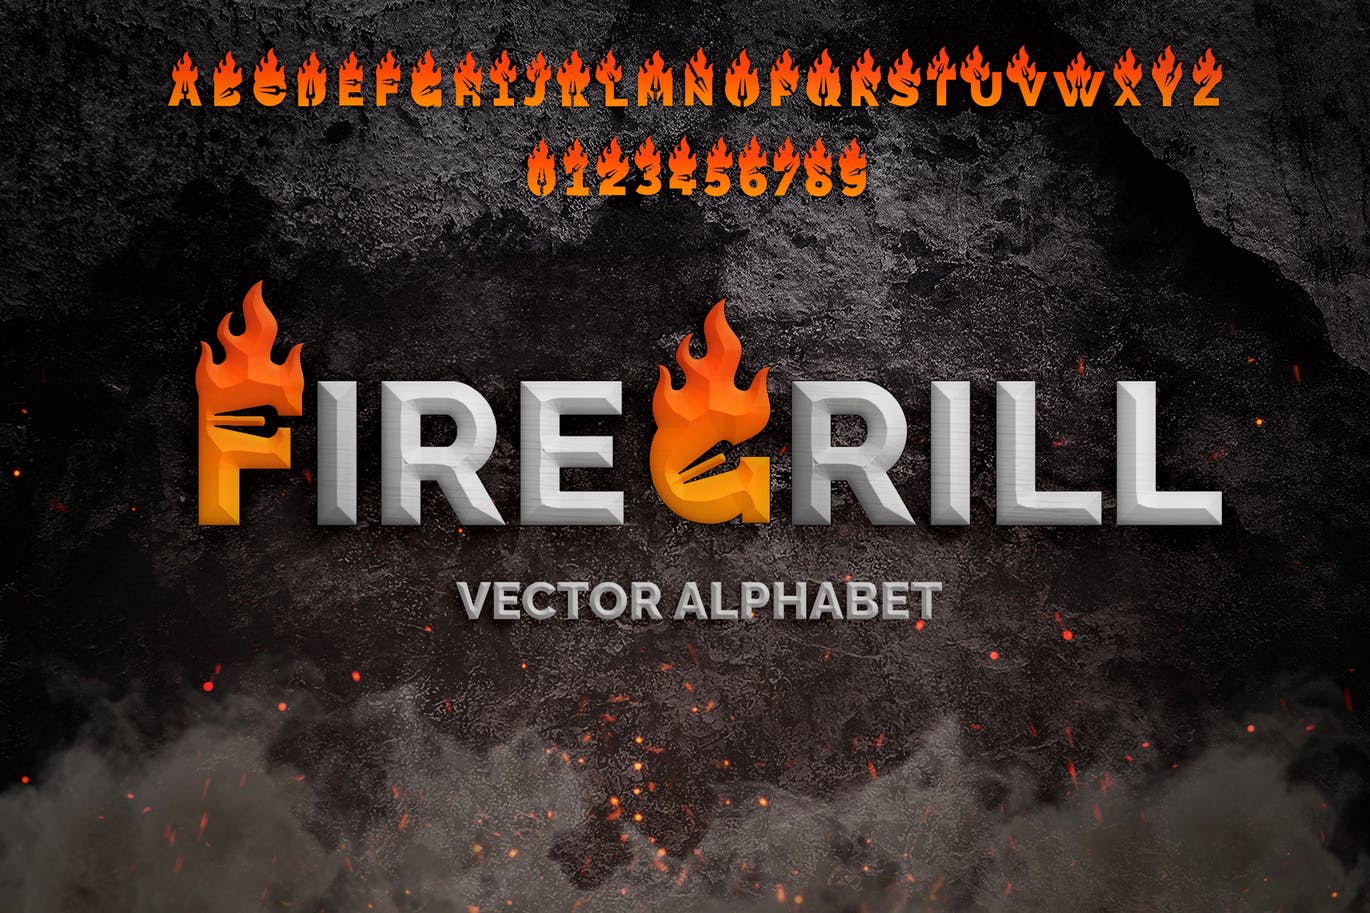 火元素烧烤BBQ烤肉店logo标志设计26个火焰英文字母数字 fire-grill-alphabet-logo-酷社 (KUSHEW)